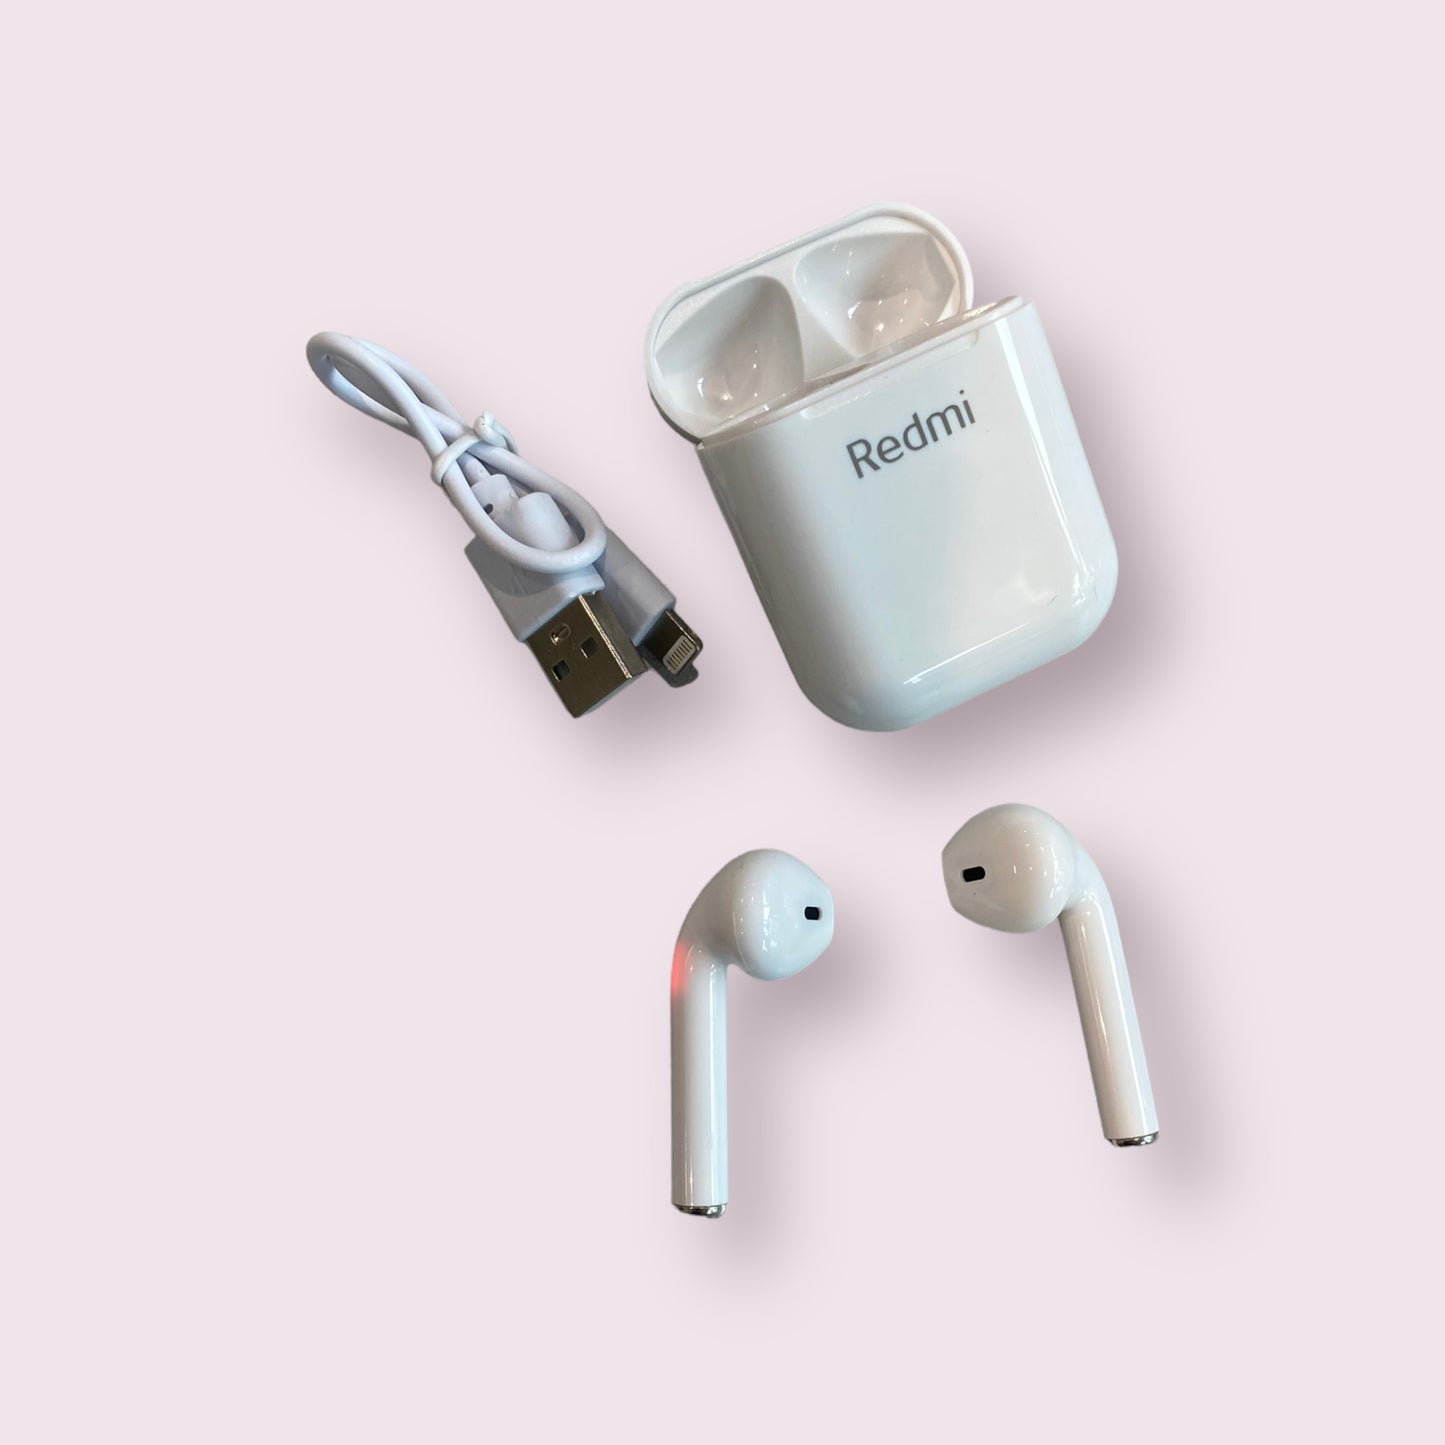 TWS LP11 Wireless bluetooth EarPods Earphone headphones with charging case Redmi LP11 - Grey